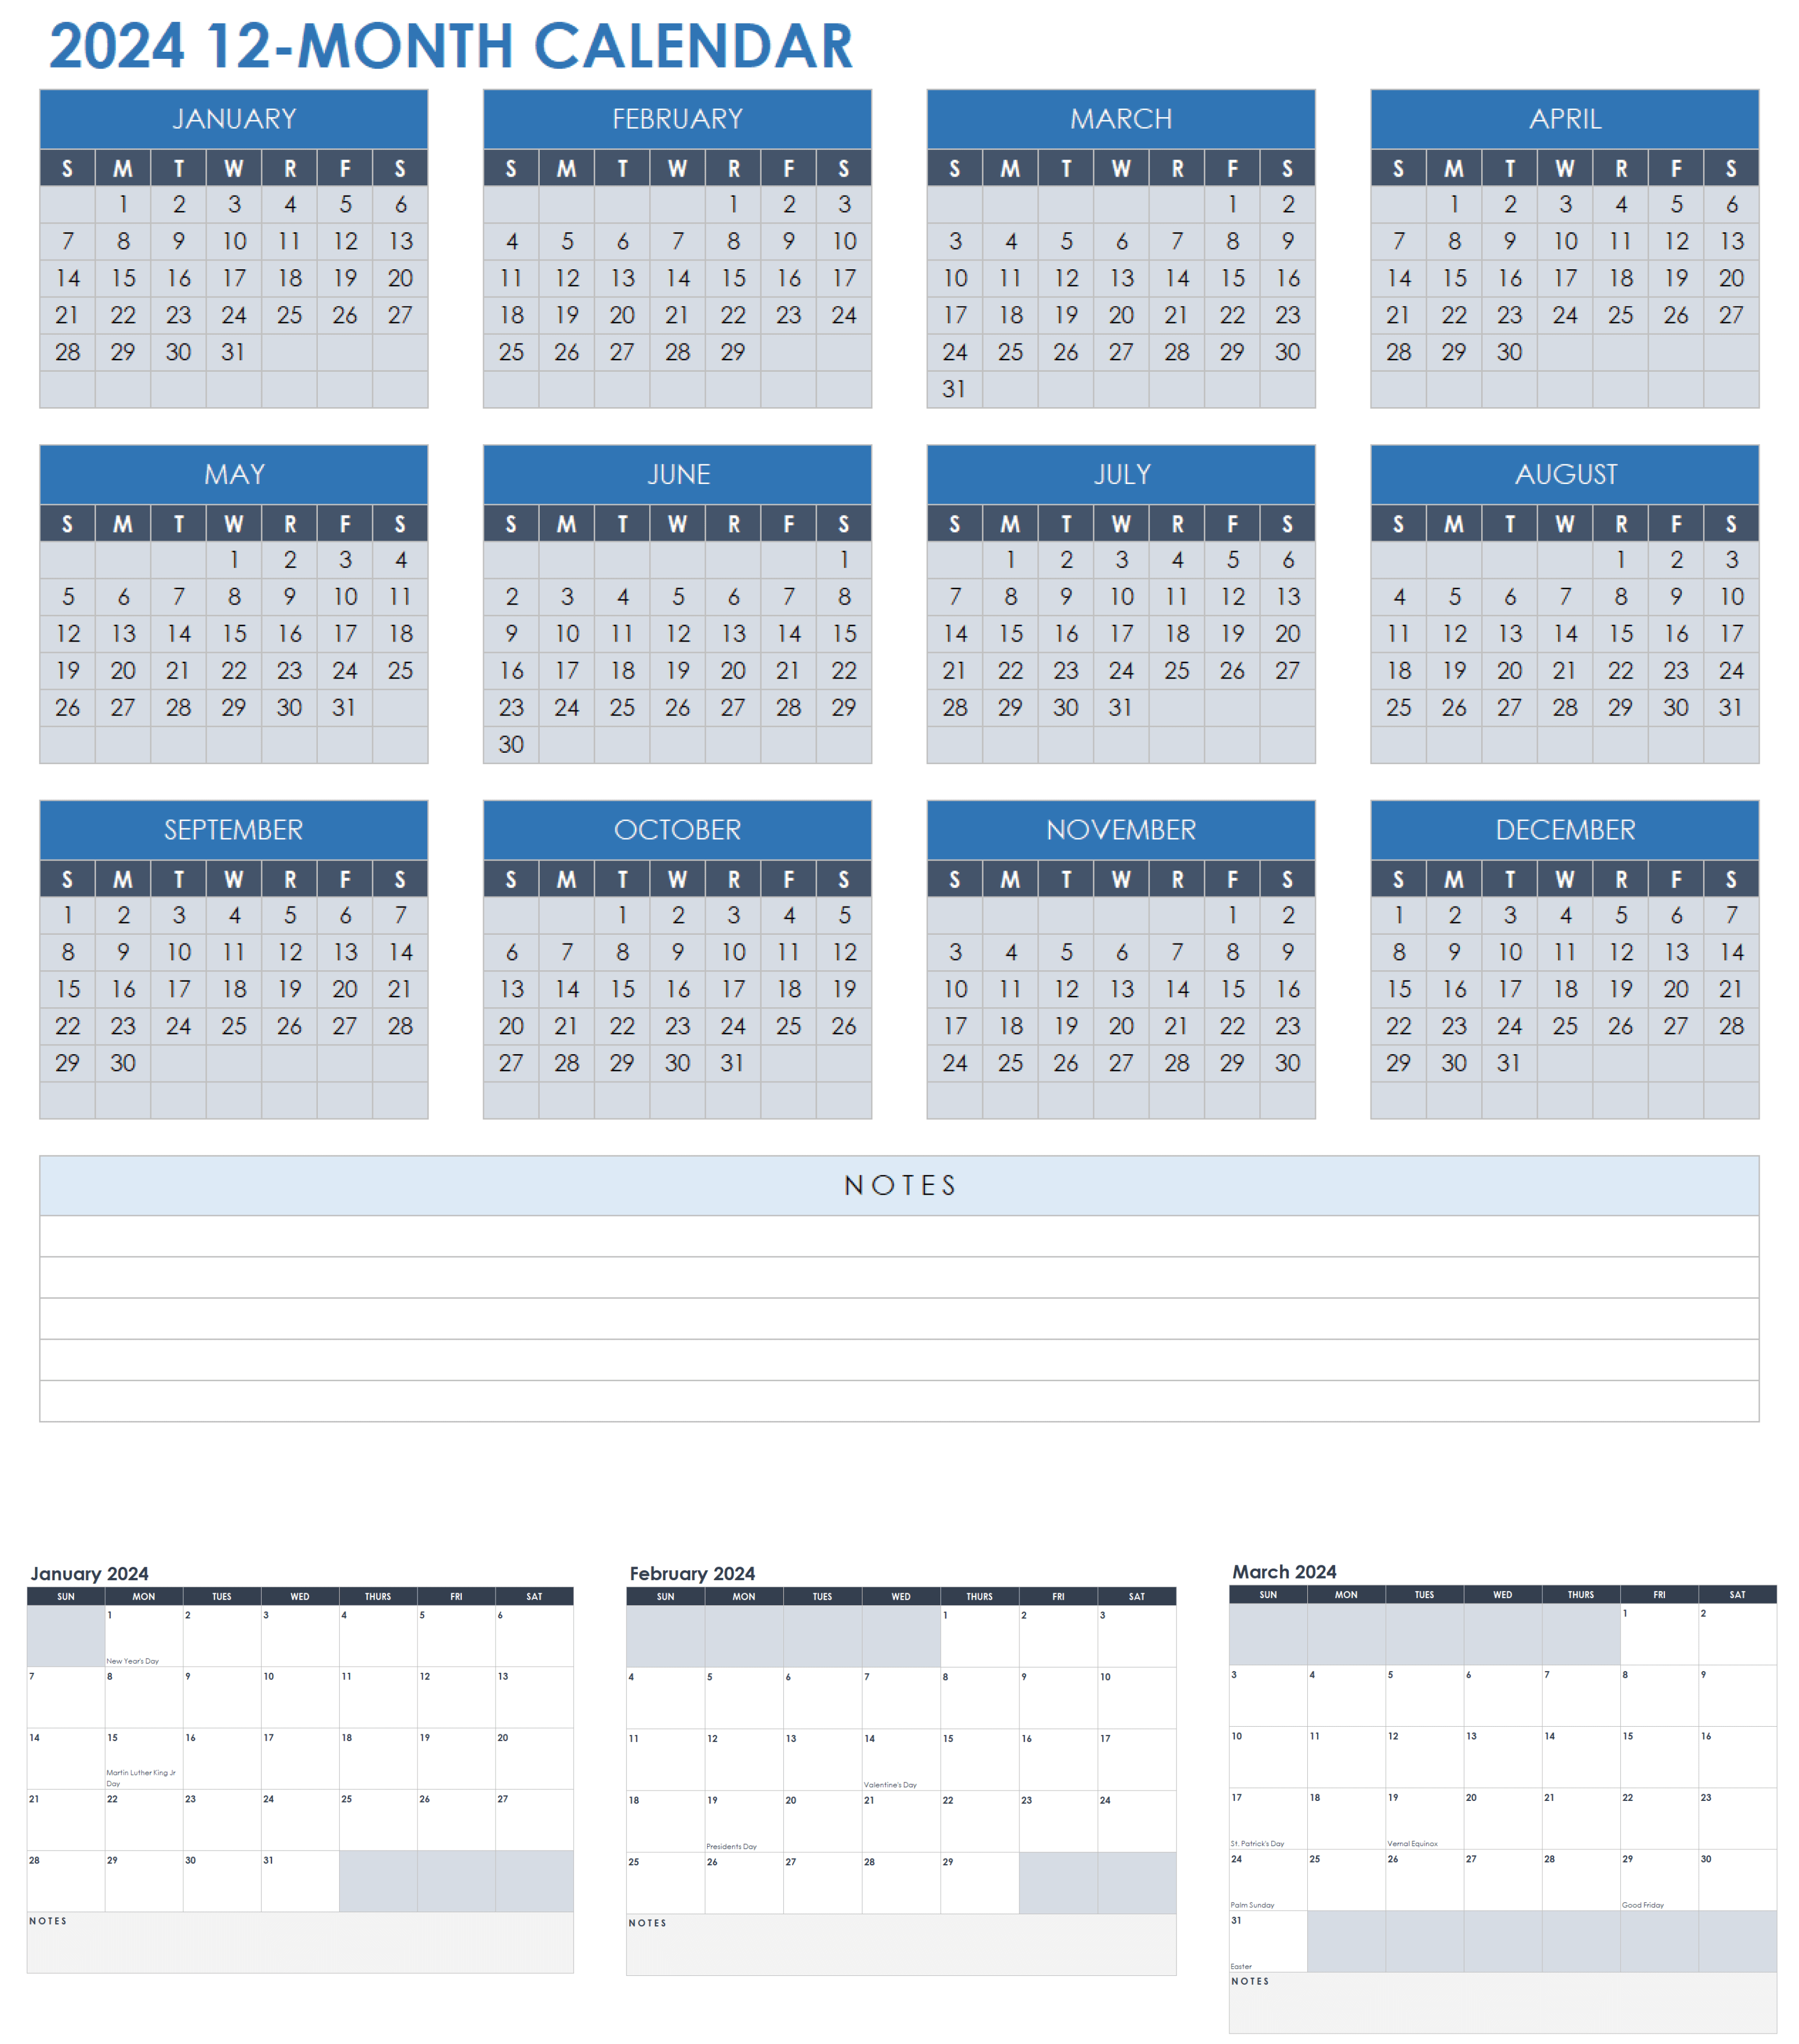 excel calendar january 2022 clipart